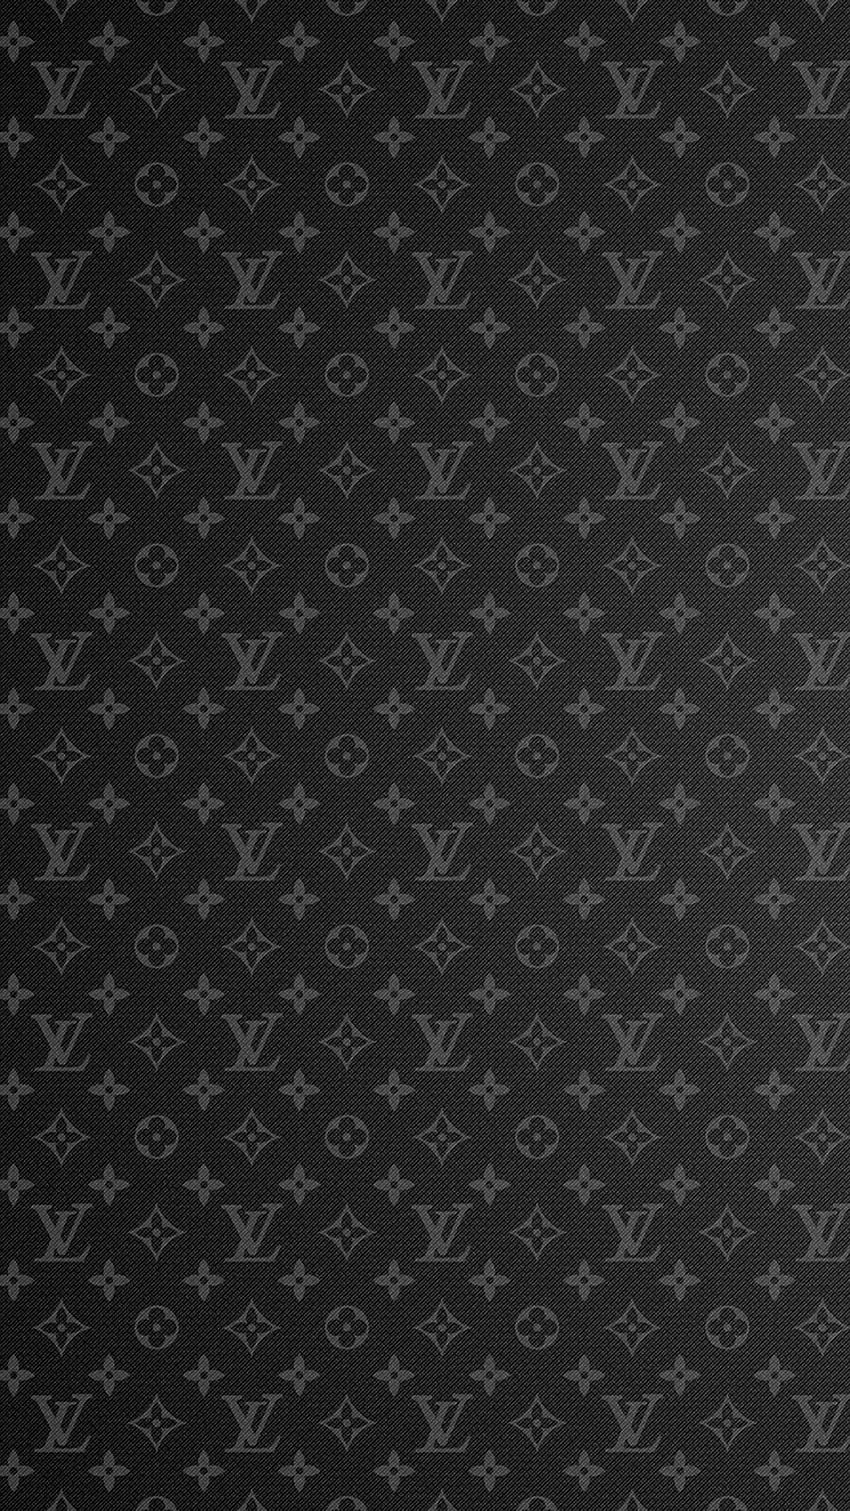 Louis Vuitton wallpaper  Louis vuitton iphone wallpaper, New